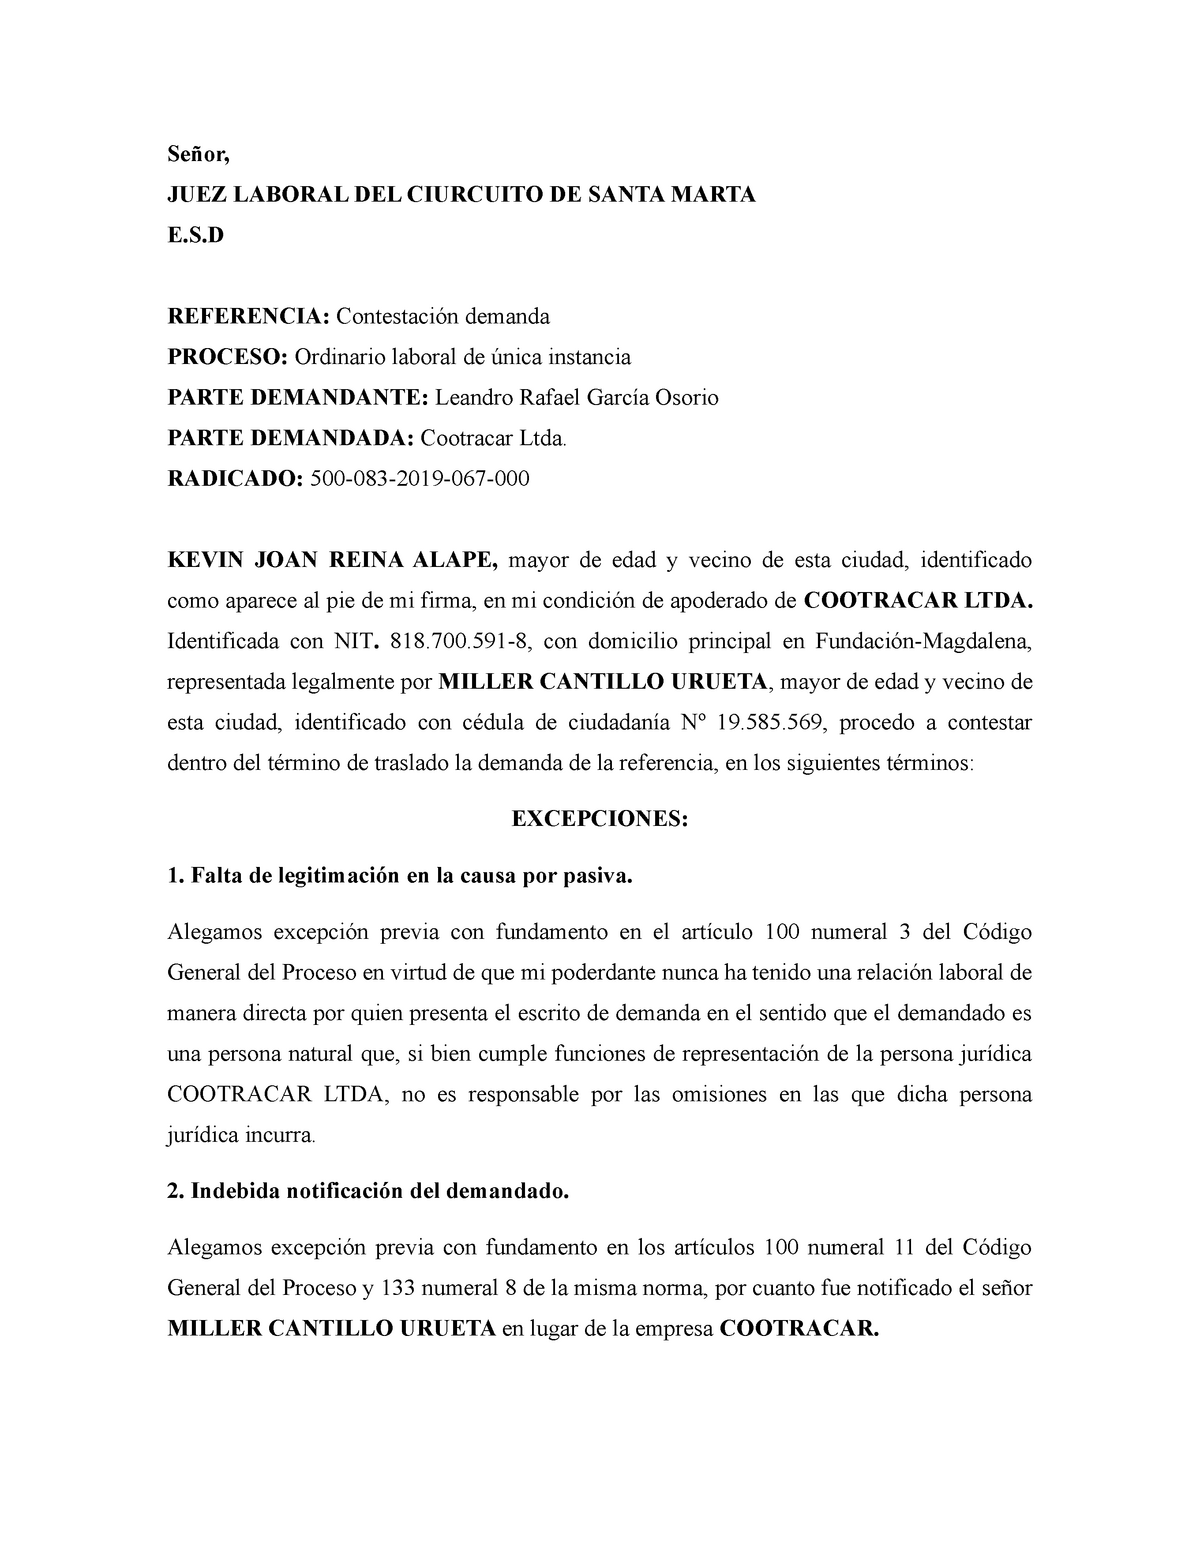 Modelo-contestacion-demanda - JUEZ LABORAL DEL CIURCUITO DE SANTA MARTA   REFERENCIA: demanda - Studocu